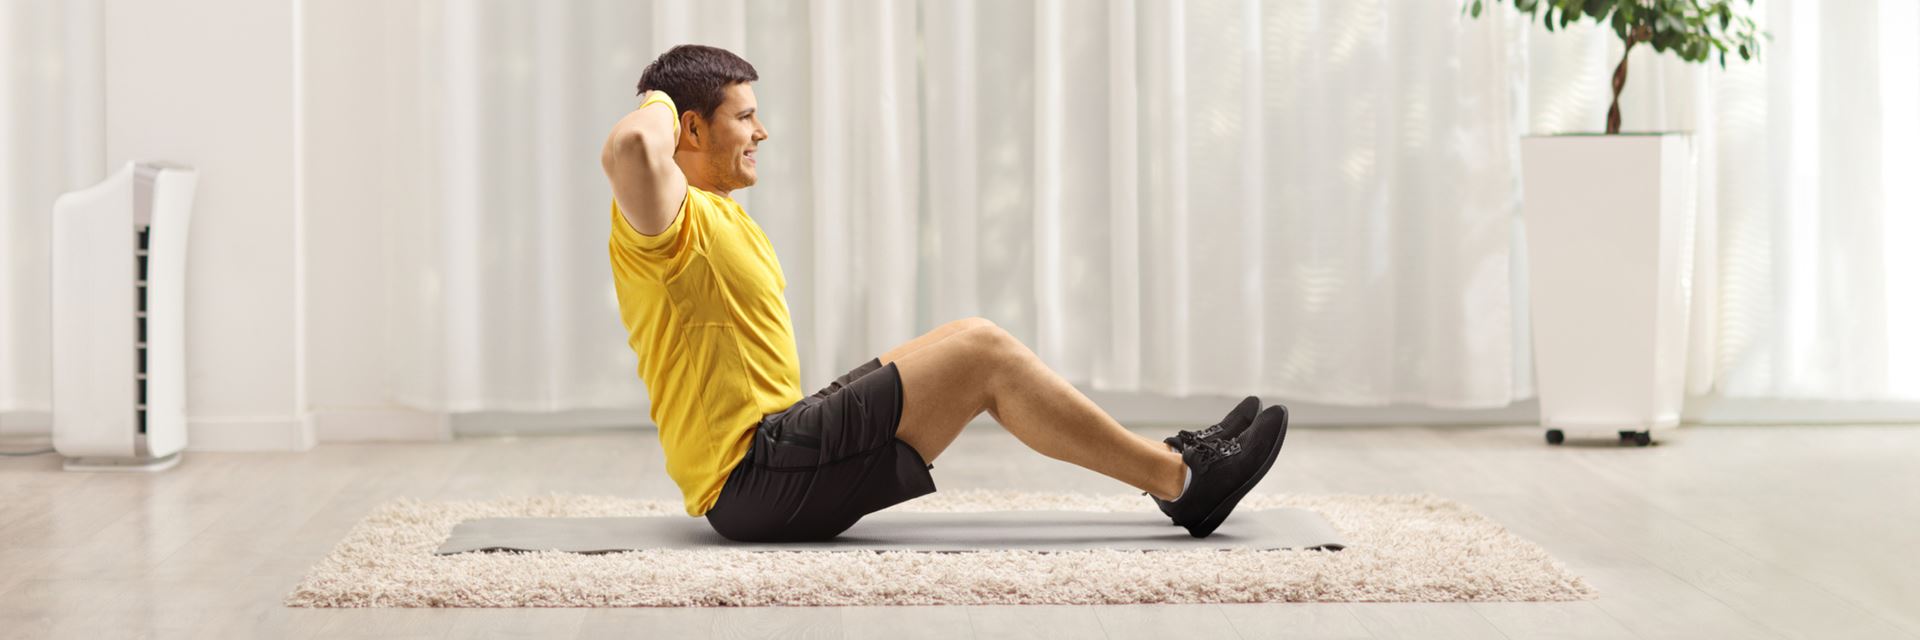 3 aerobicsoefeningen voor beginners